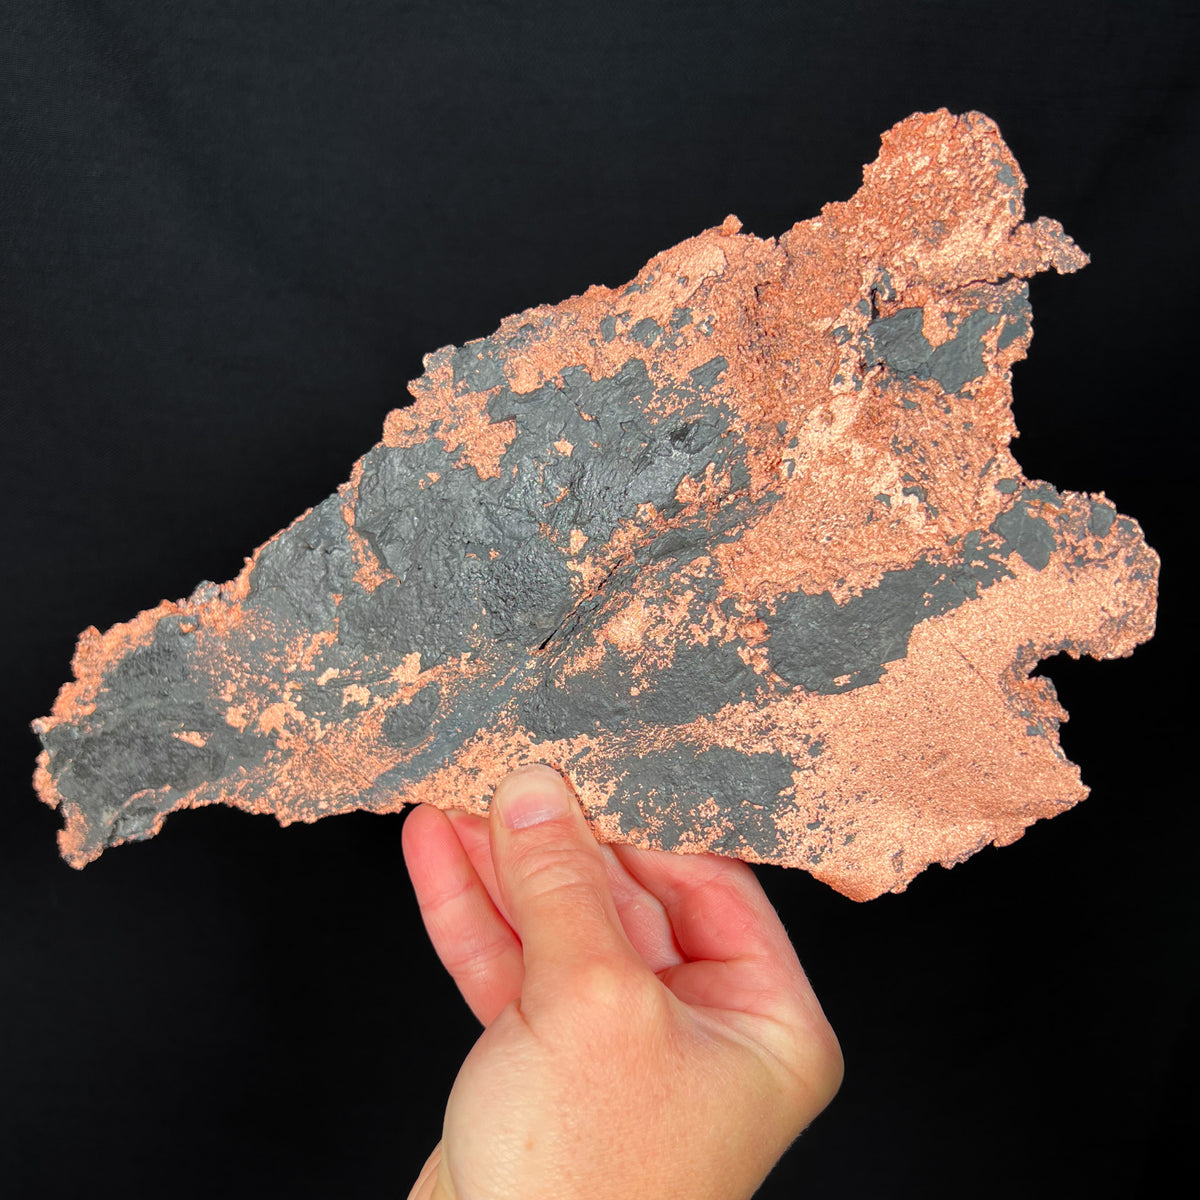 Native Copper with Shale, Upper Peninsula, Michigan